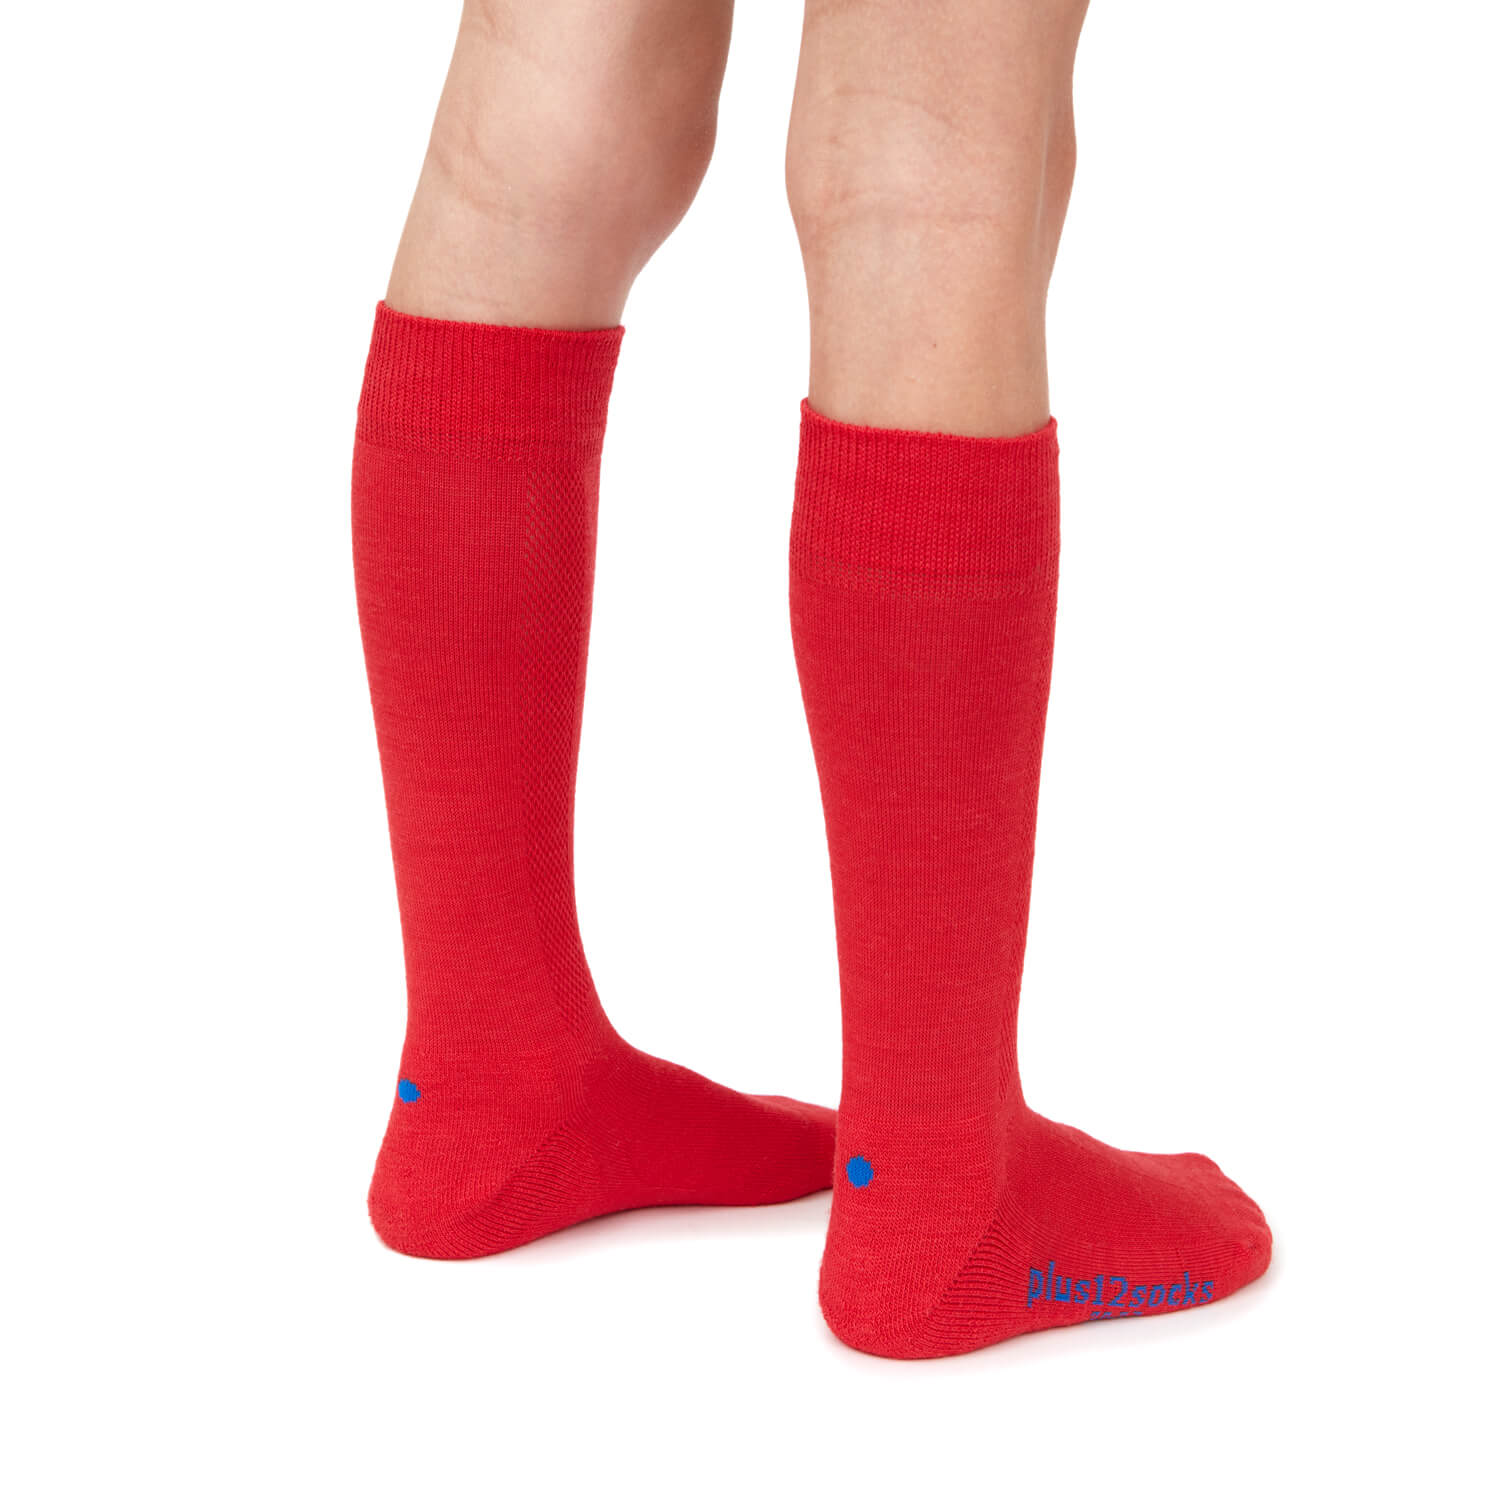 Plus12 Calcetines largos lana merino rojos-plus12-Cacles Barefoot